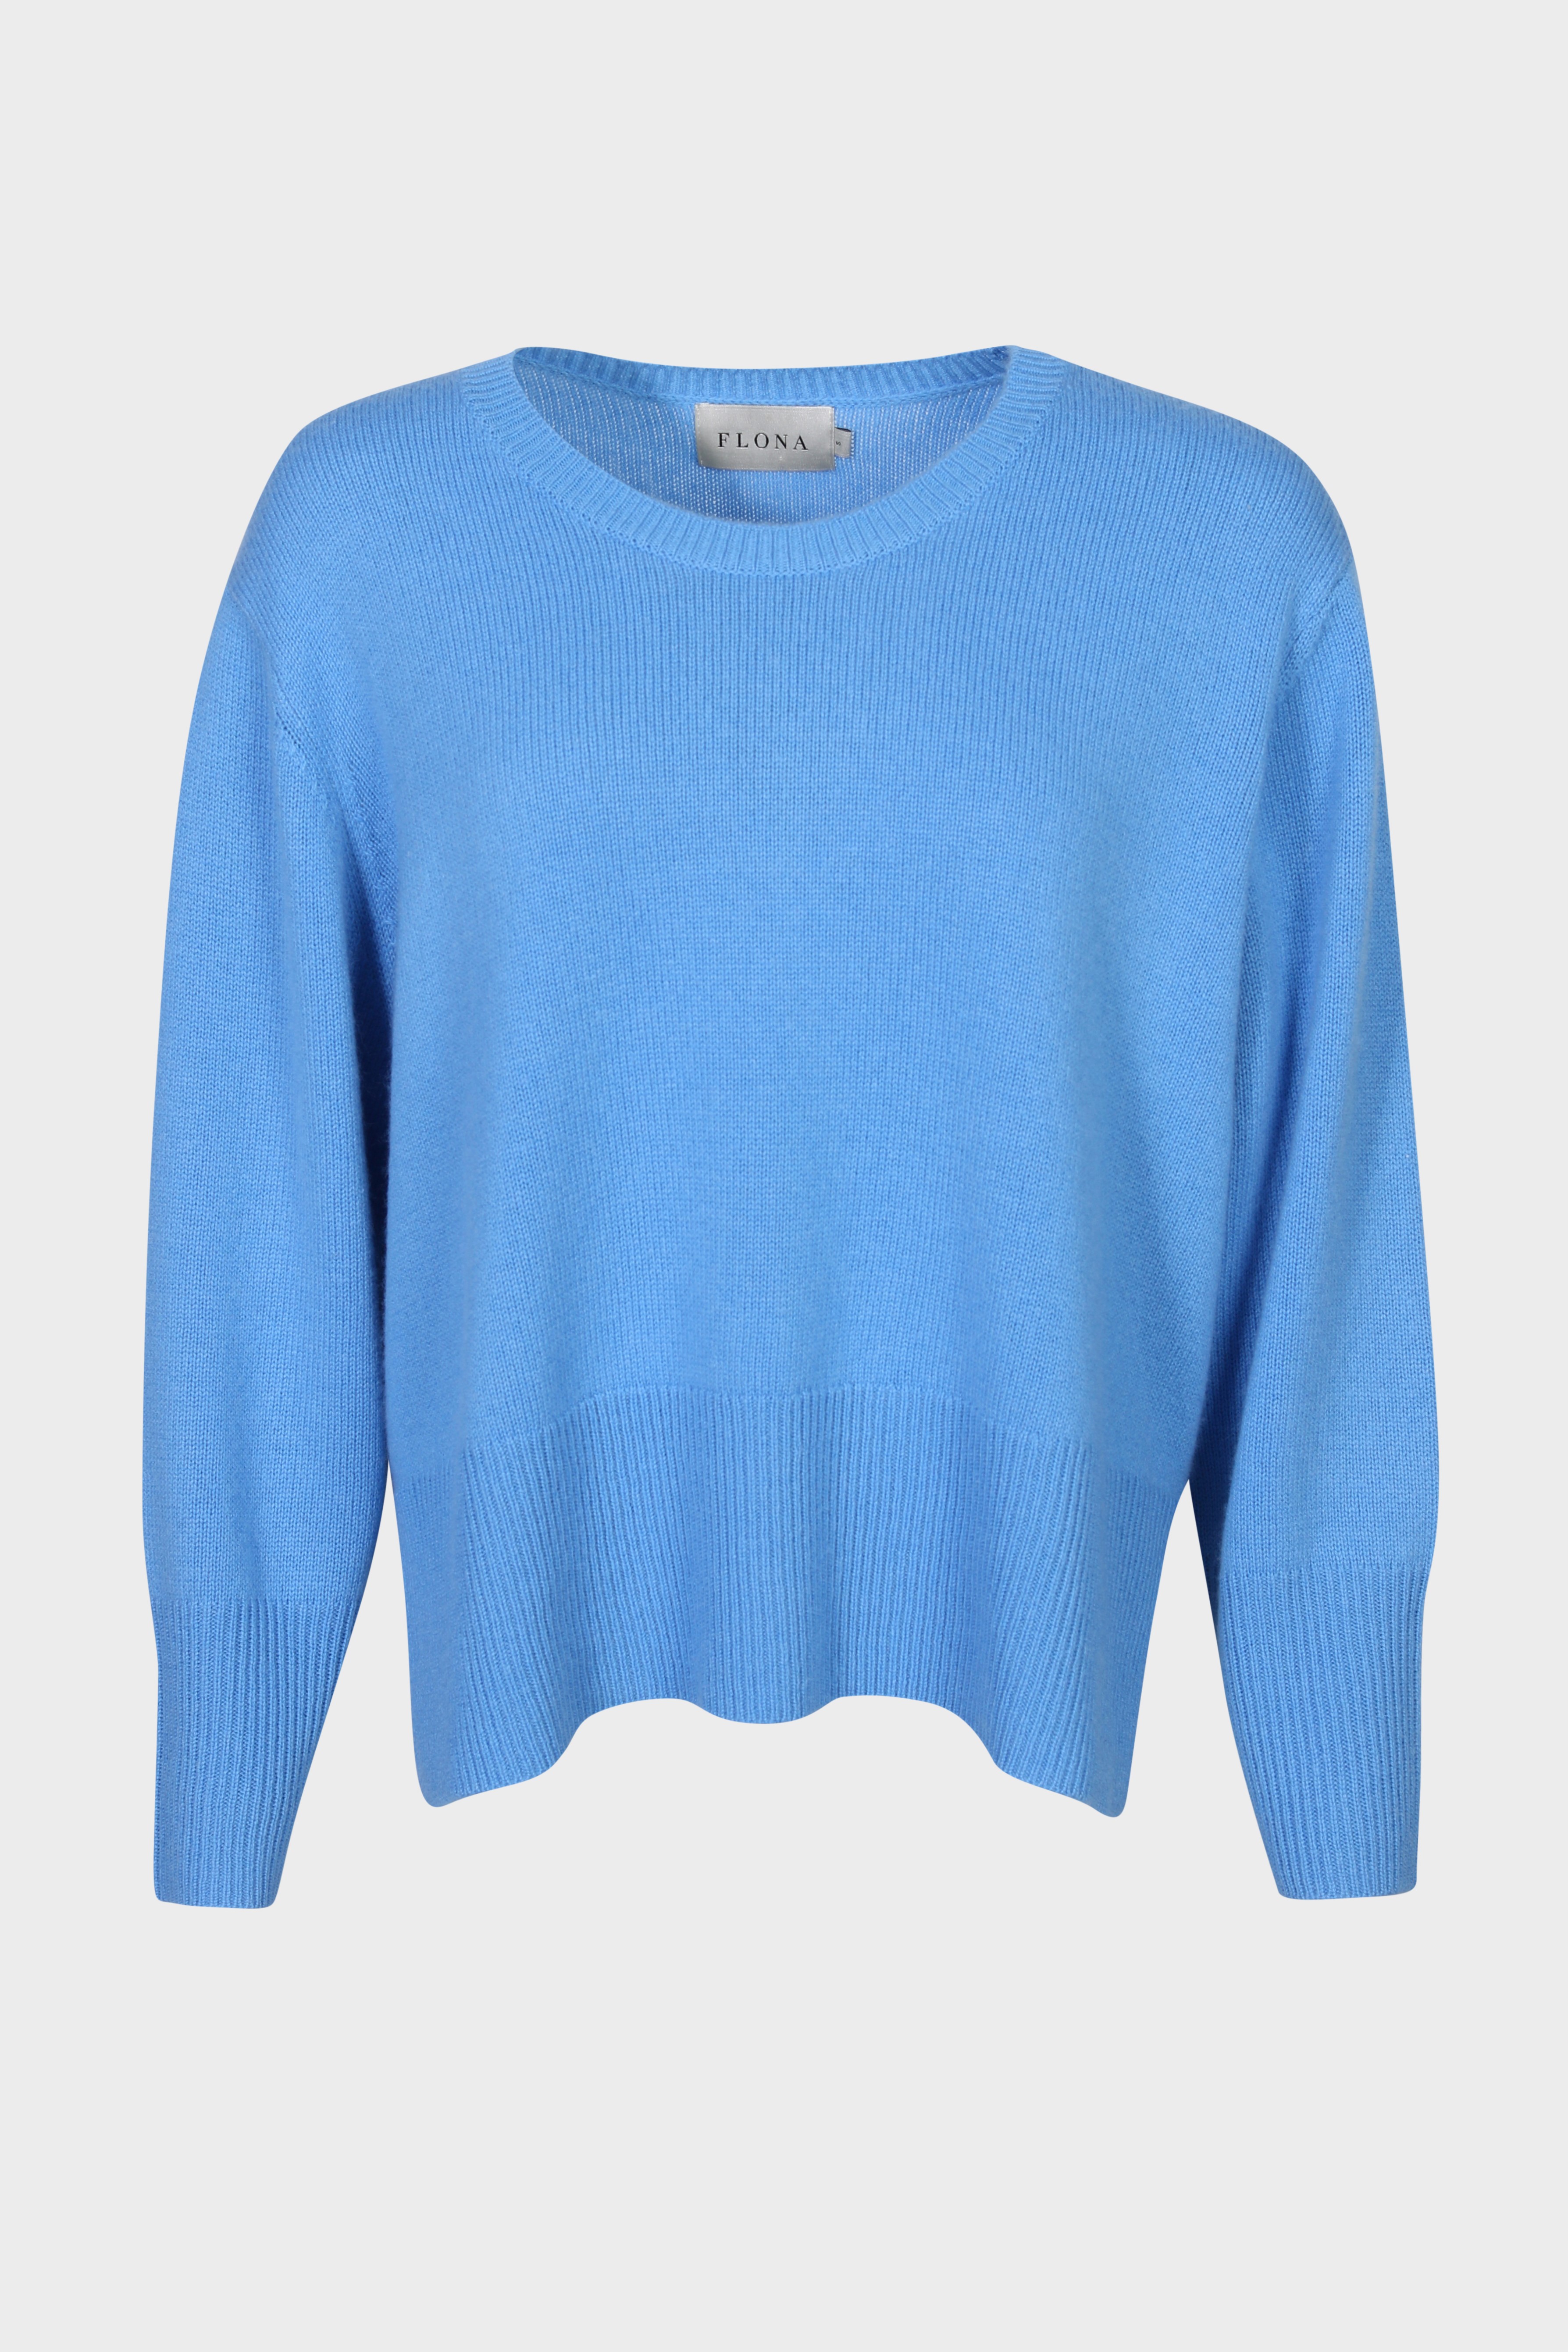 FLONA Cashmere Sweater in Azur L